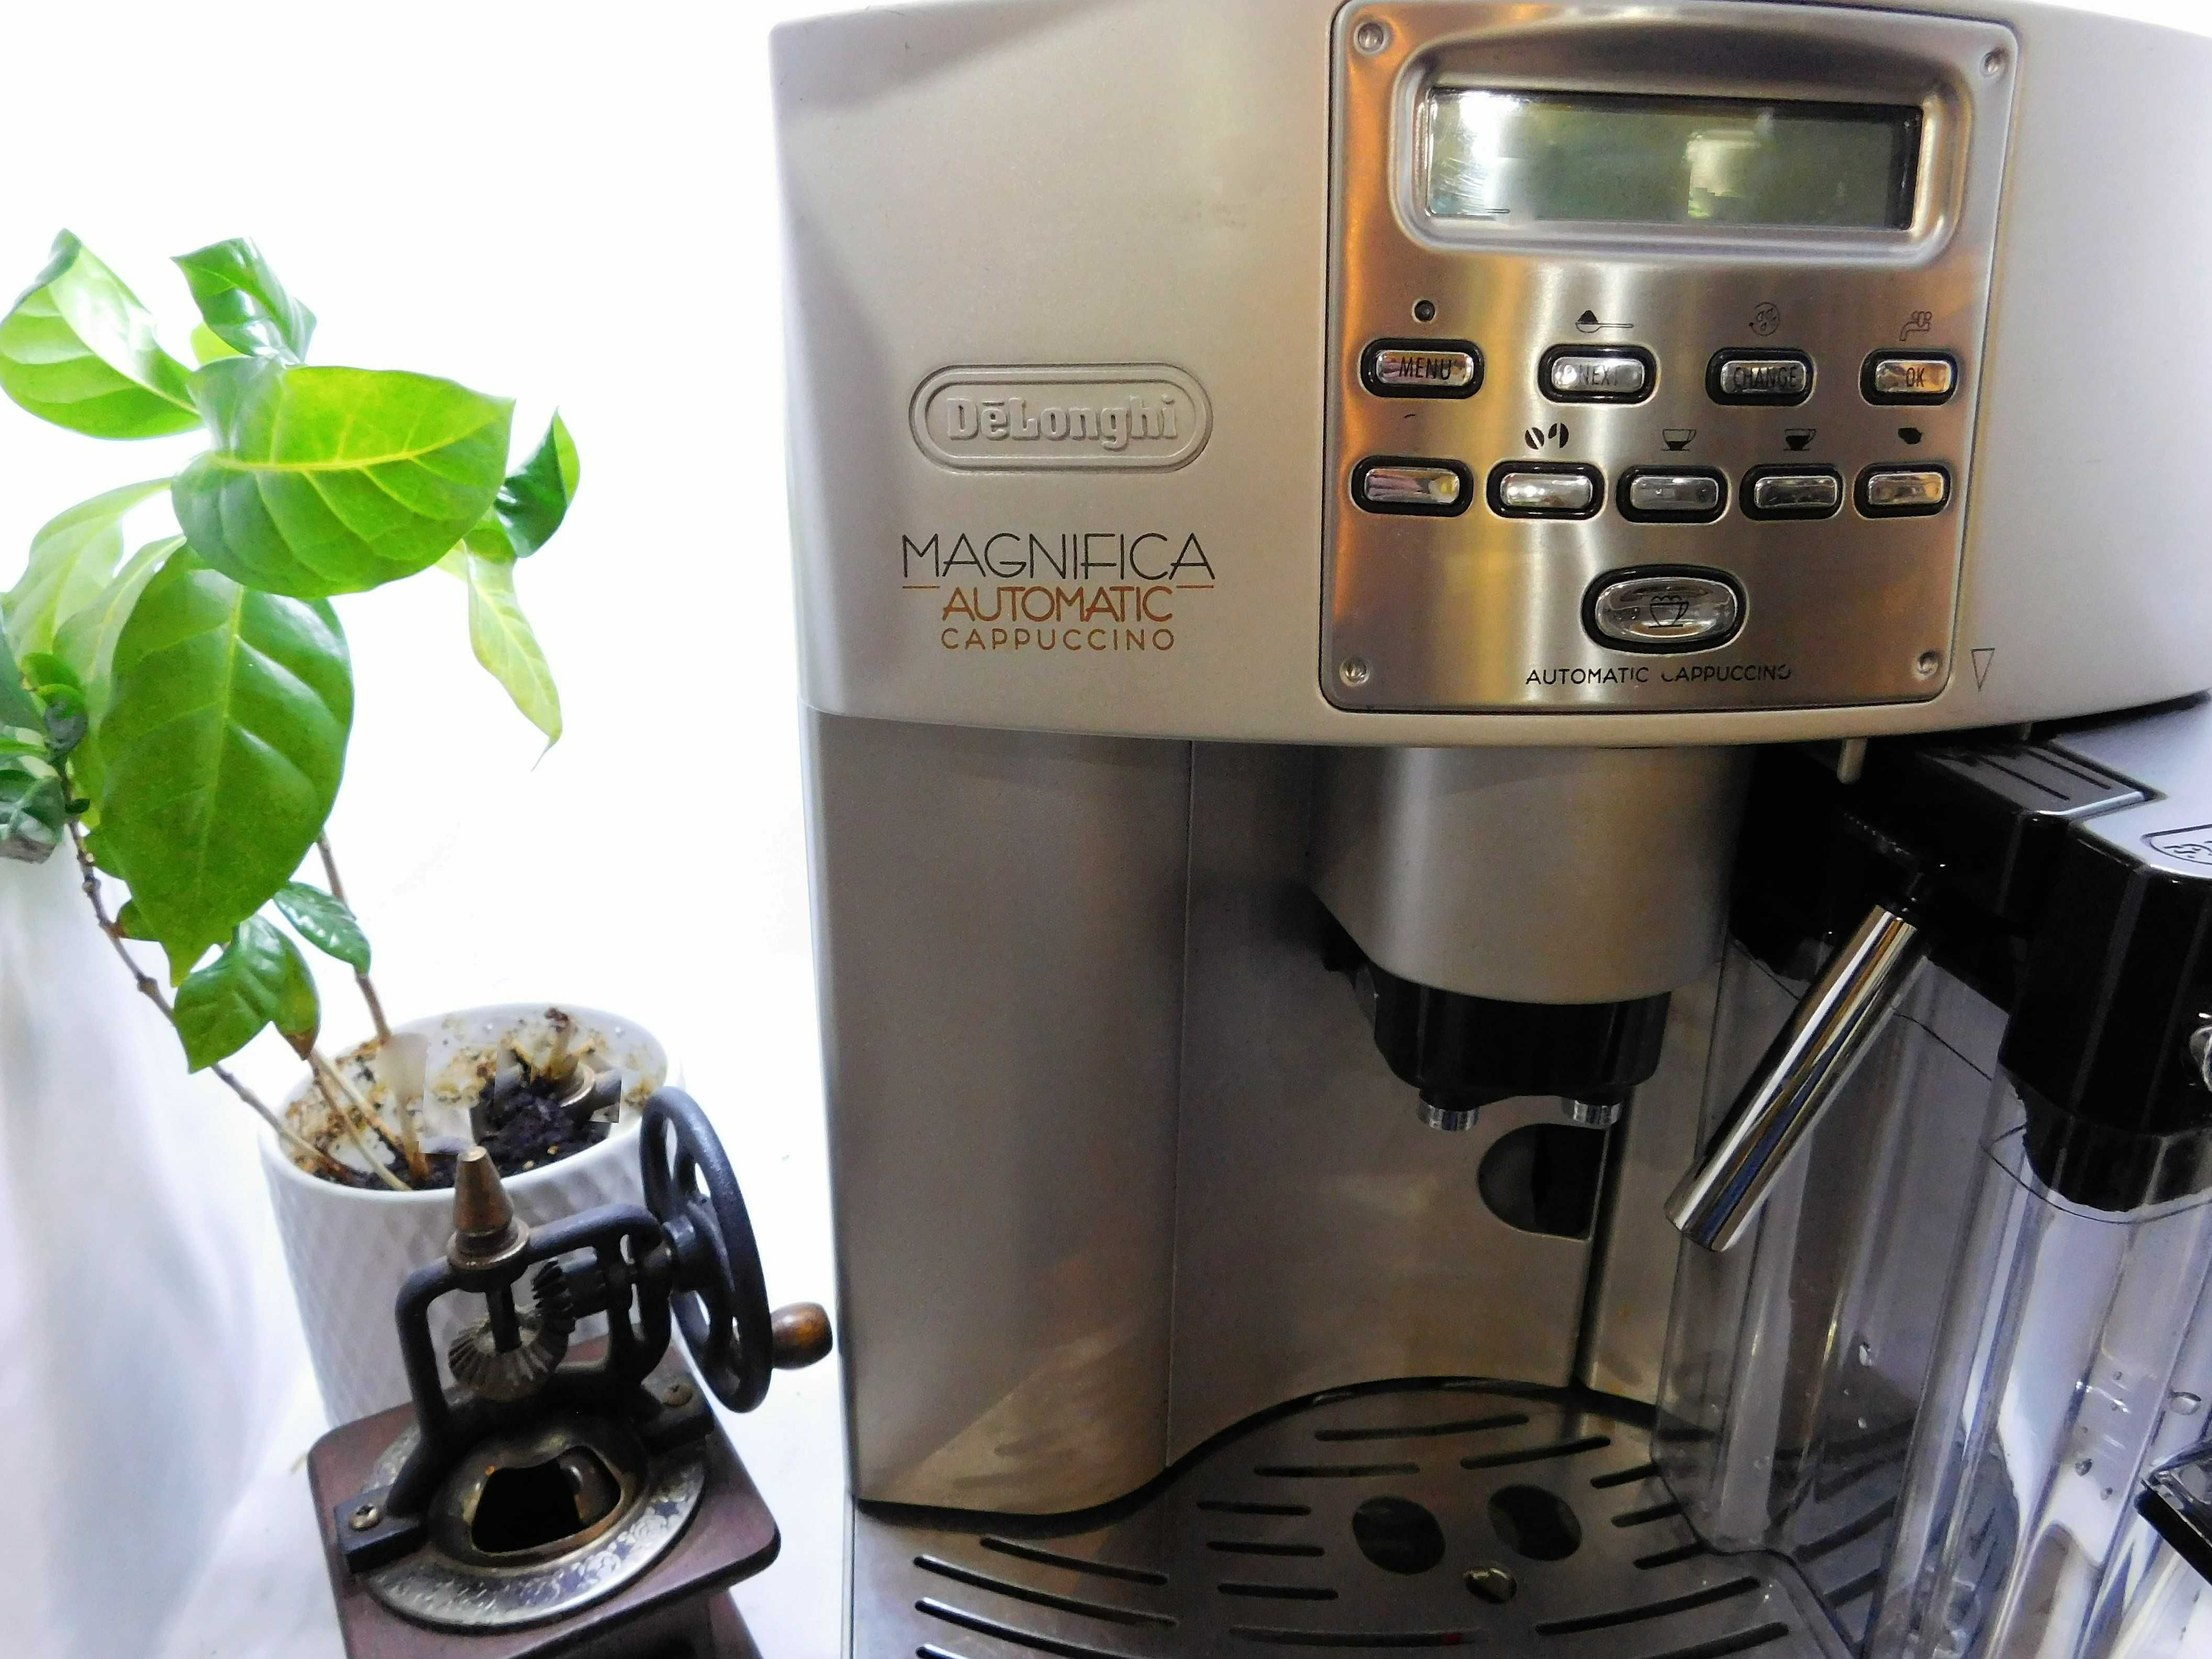 Espressor Delonghi Magnifica Automatic Cappuccino / garantie 12 luni